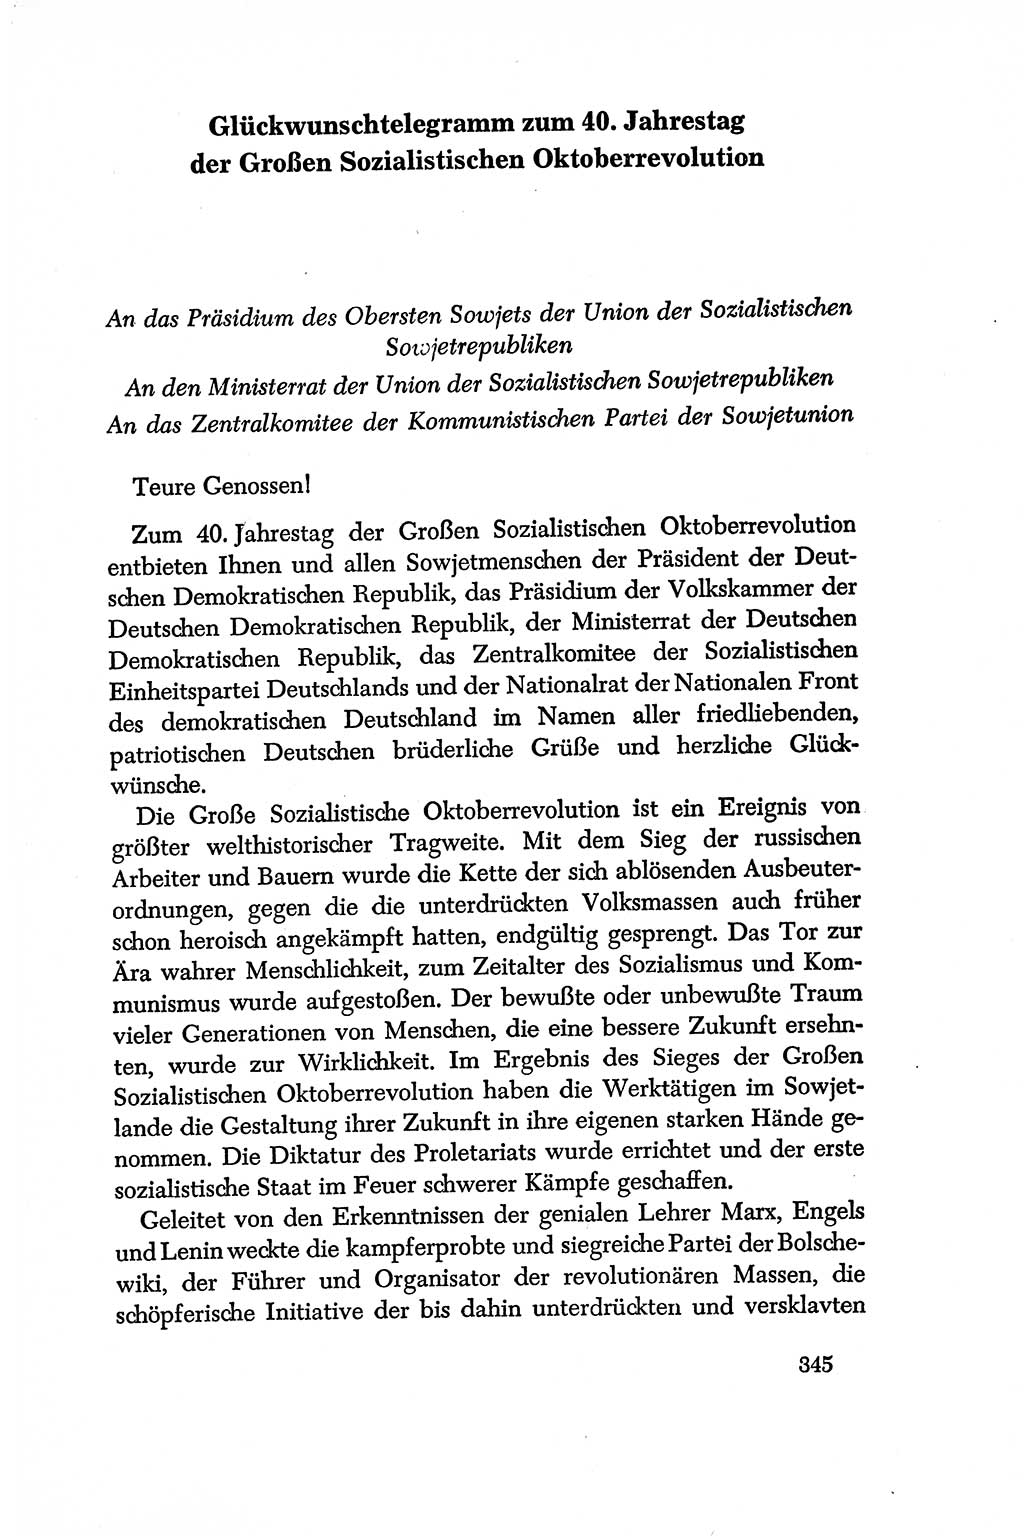 Dokumente der Sozialistischen Einheitspartei Deutschlands (SED) [Deutsche Demokratische Republik (DDR)] 1956-1957, Seite 345 (Dok. SED DDR 1956-1957, S. 345)